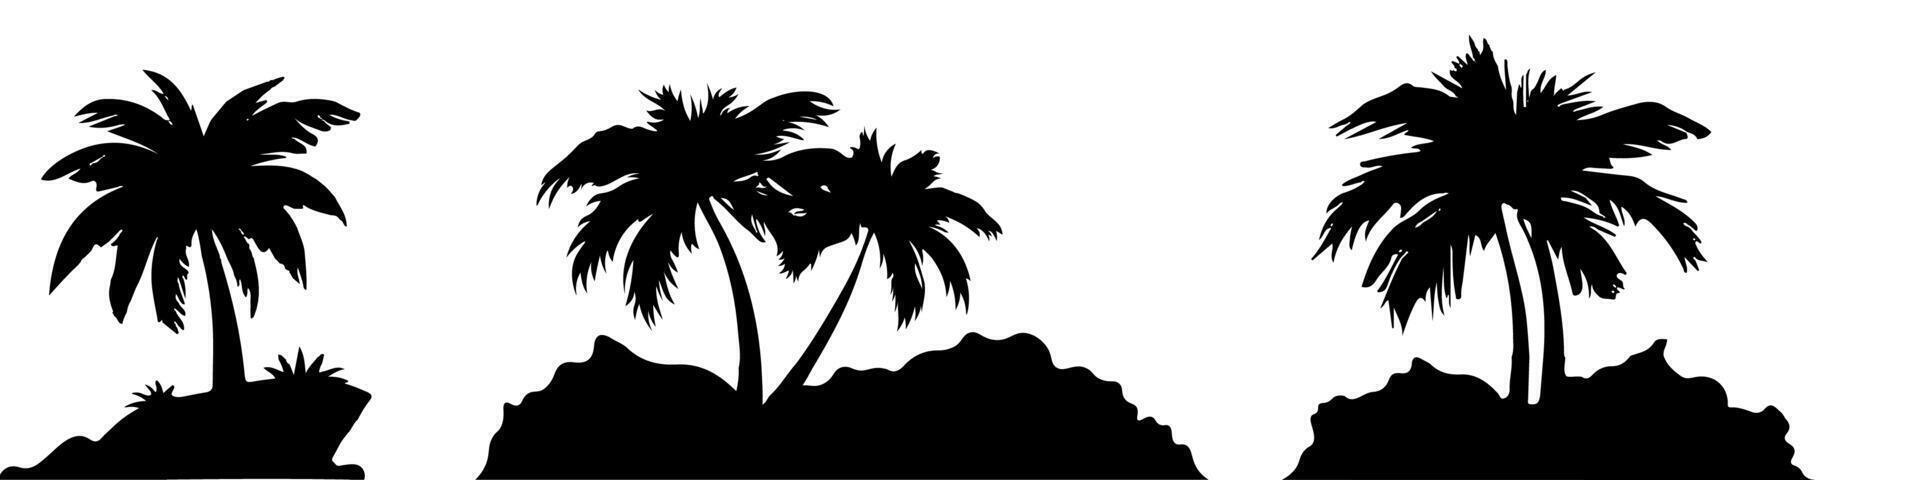 Coco árbol silueta diseño con rock base. vector ilustracion